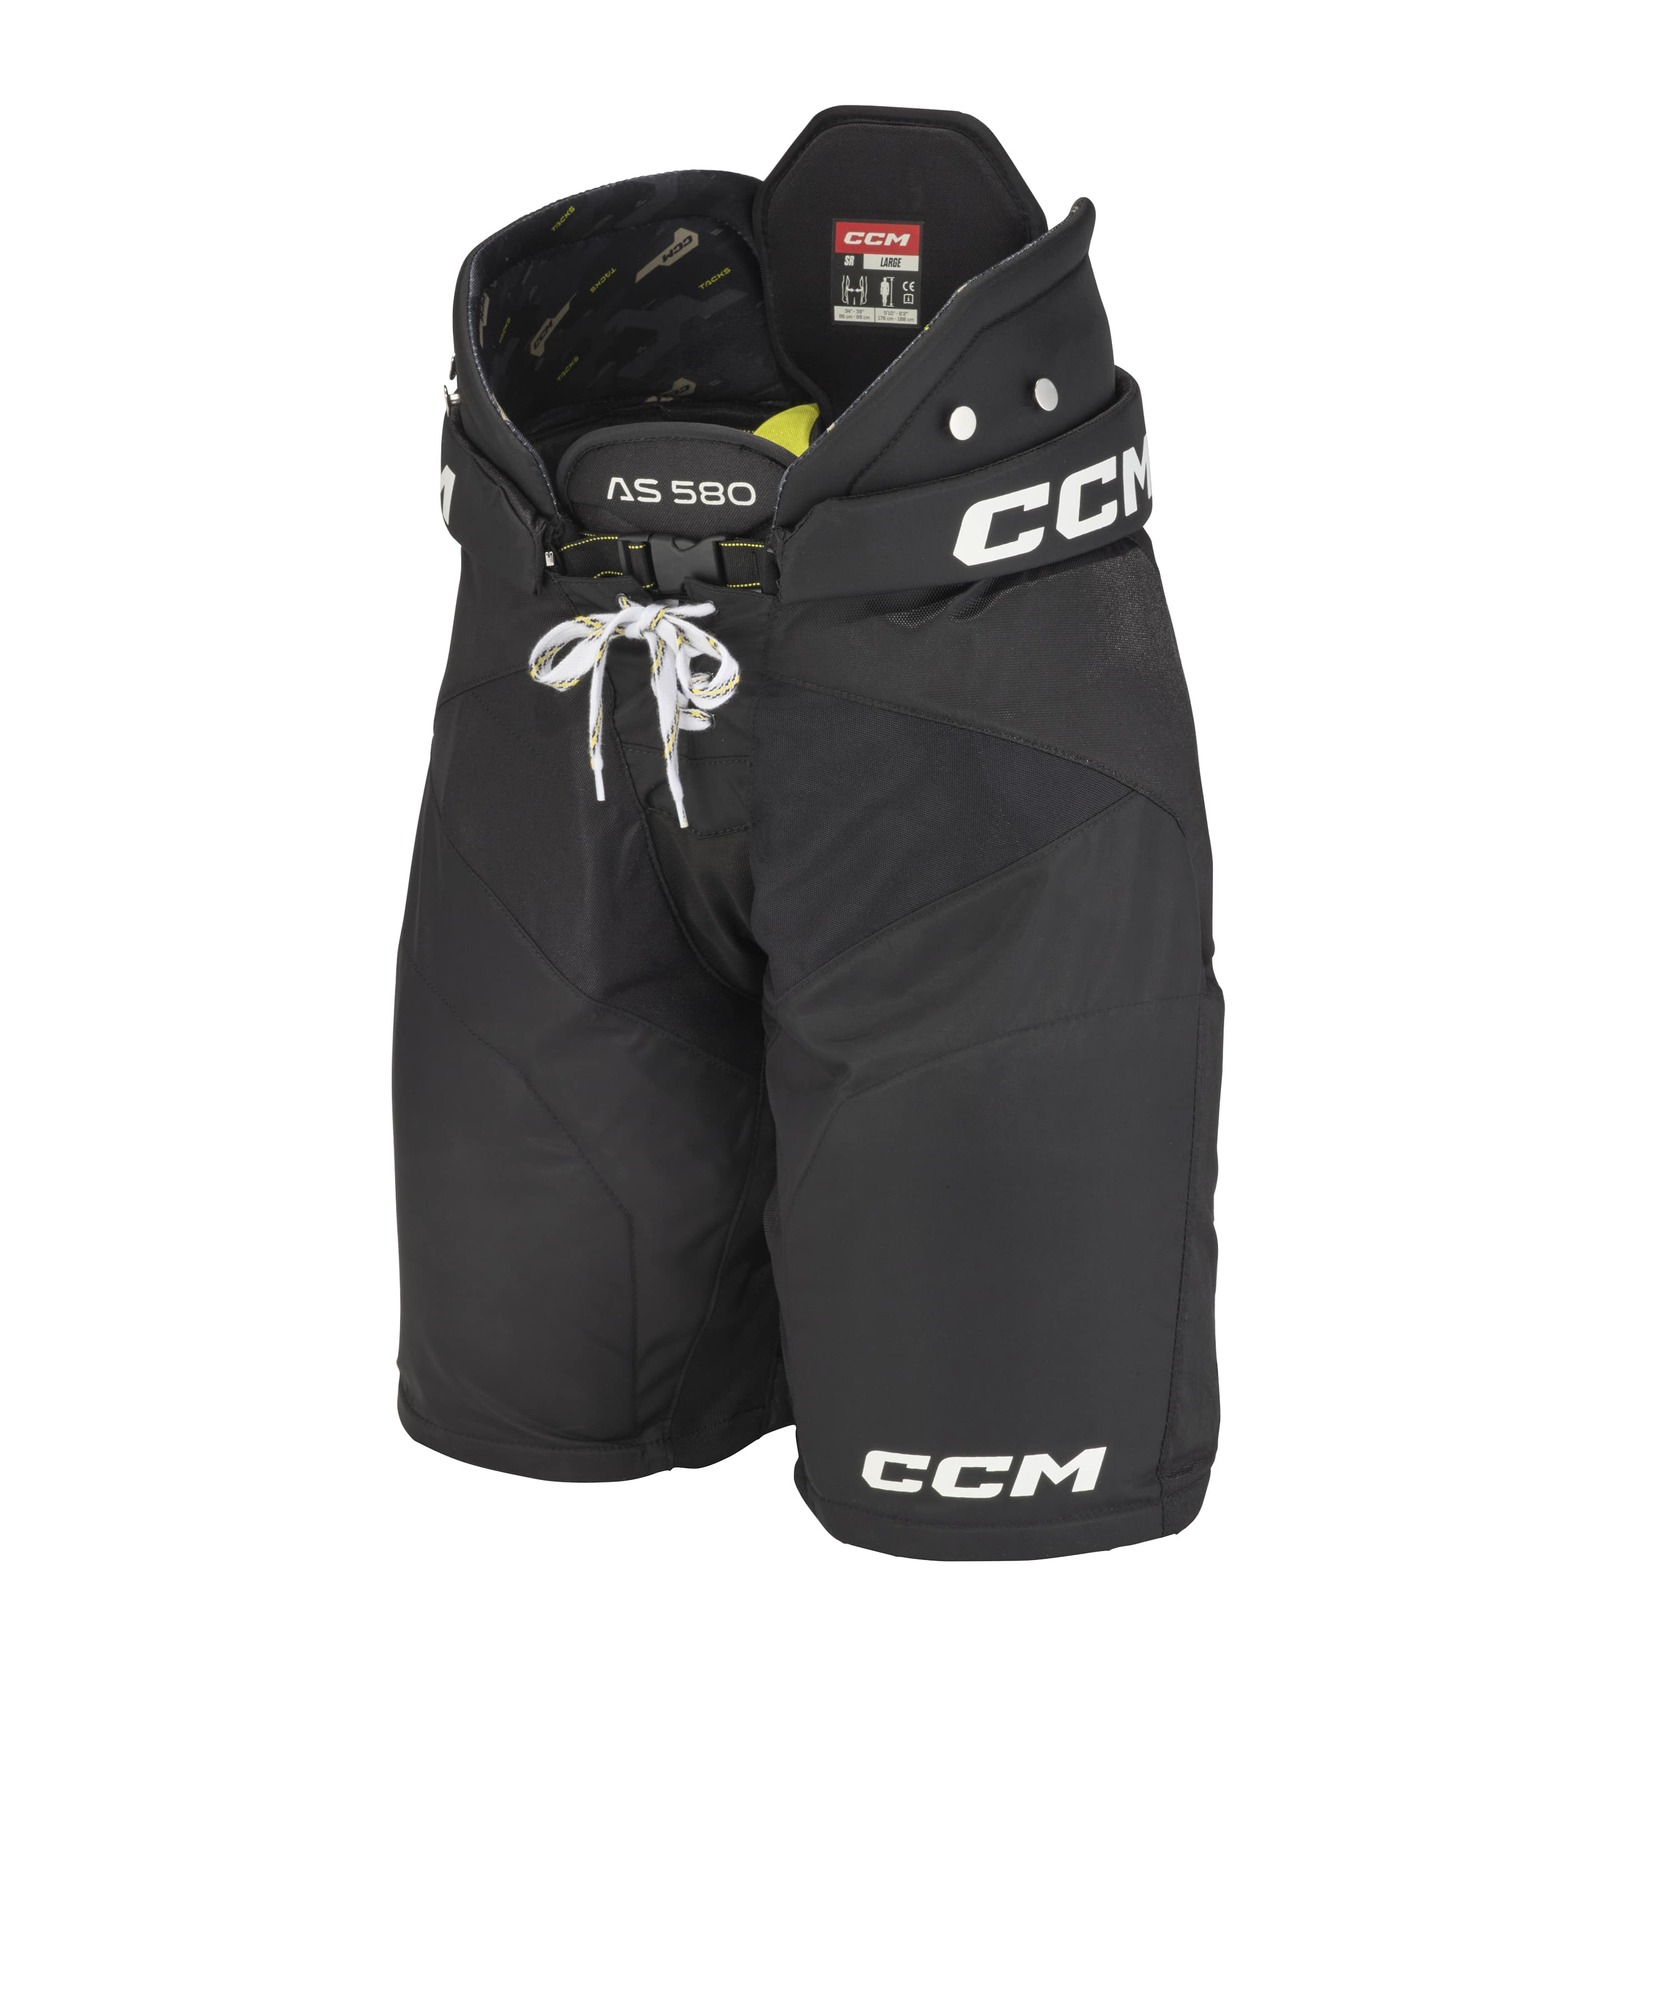 Kalhoty CCM Tacks AS-580 JR, Junior, M, černá